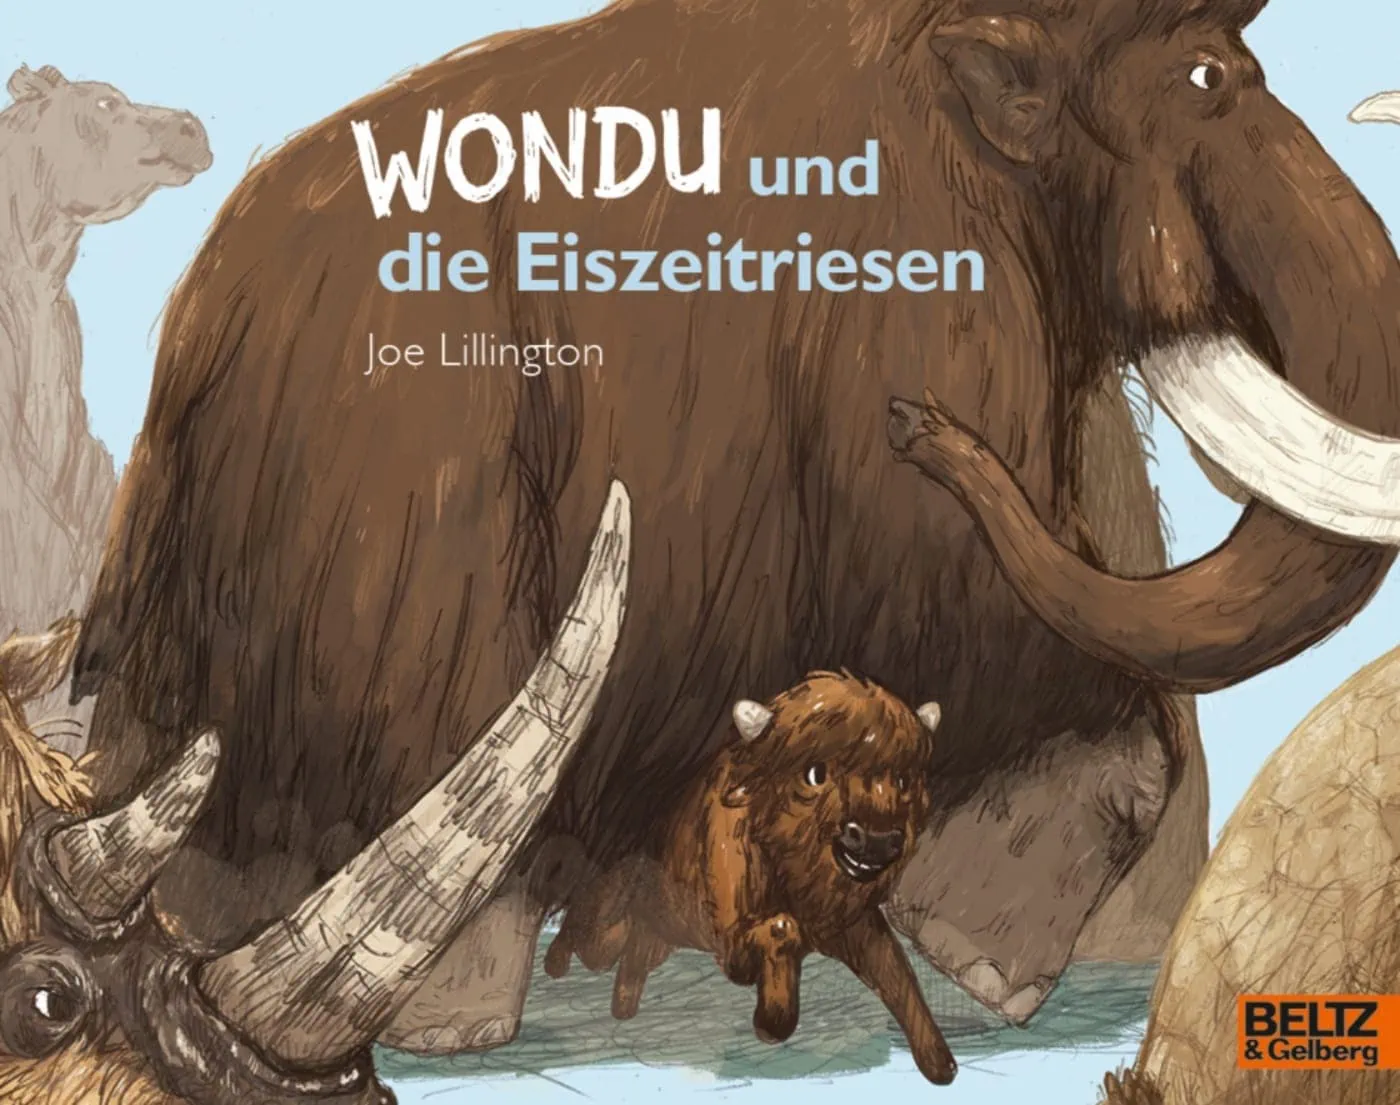 Kinderbuch-Tipp: Wondu und die Eiszeitriesen // HIMBEER